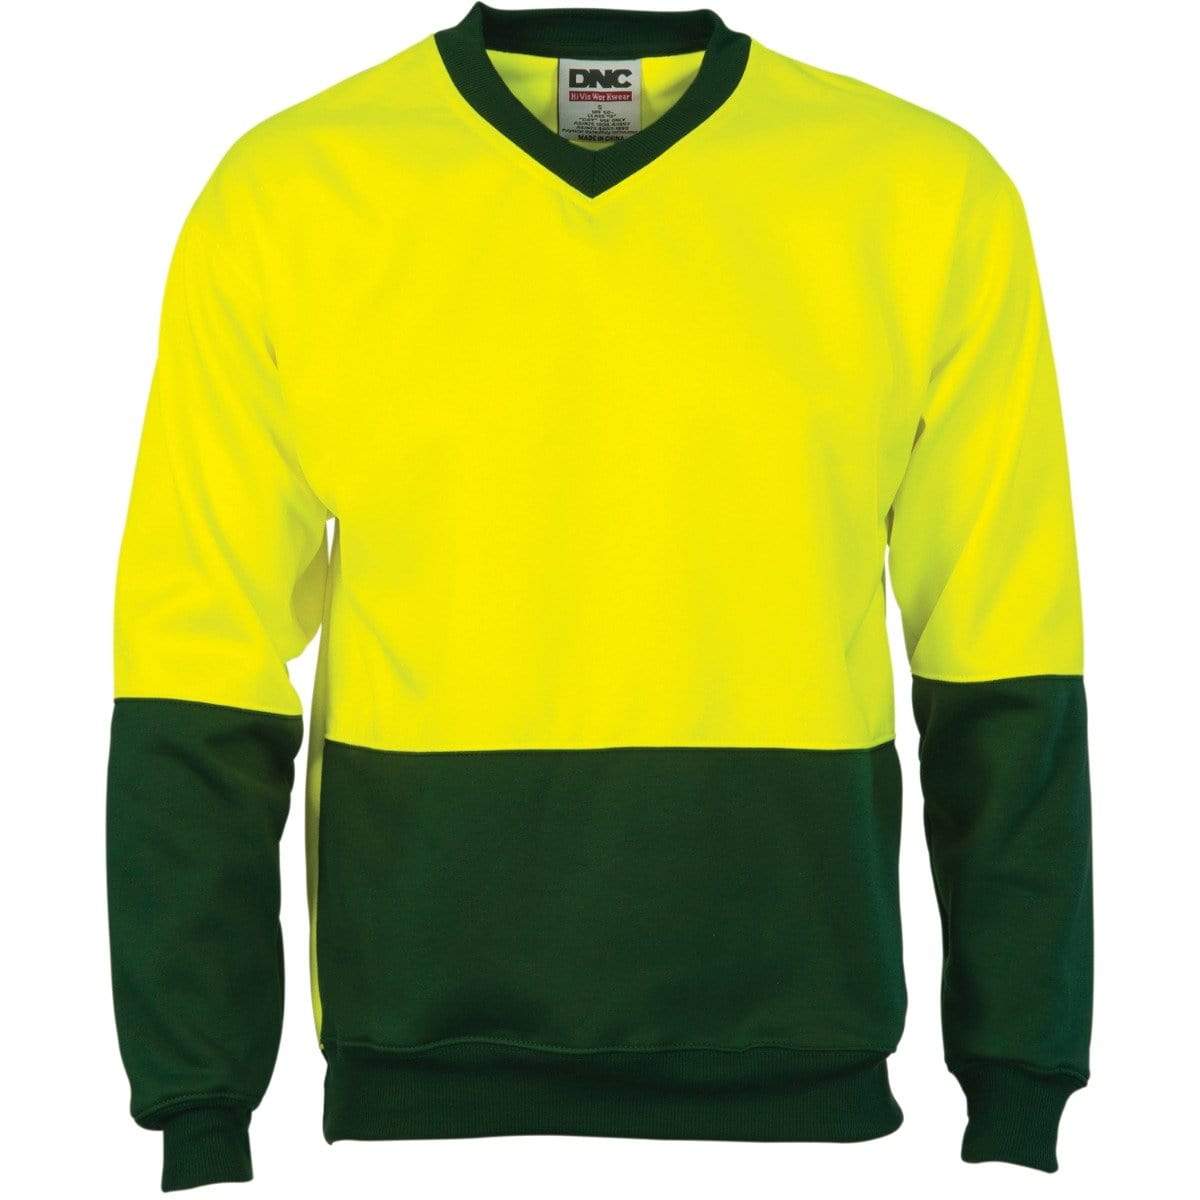 DNC Workwear Work Wear Yellow/Bottle Green / XS DNC WORKWEAR Hi-Vis Two-Tone Fleecy V-Neck Sweatshirt (Sloppy Joe) 3822